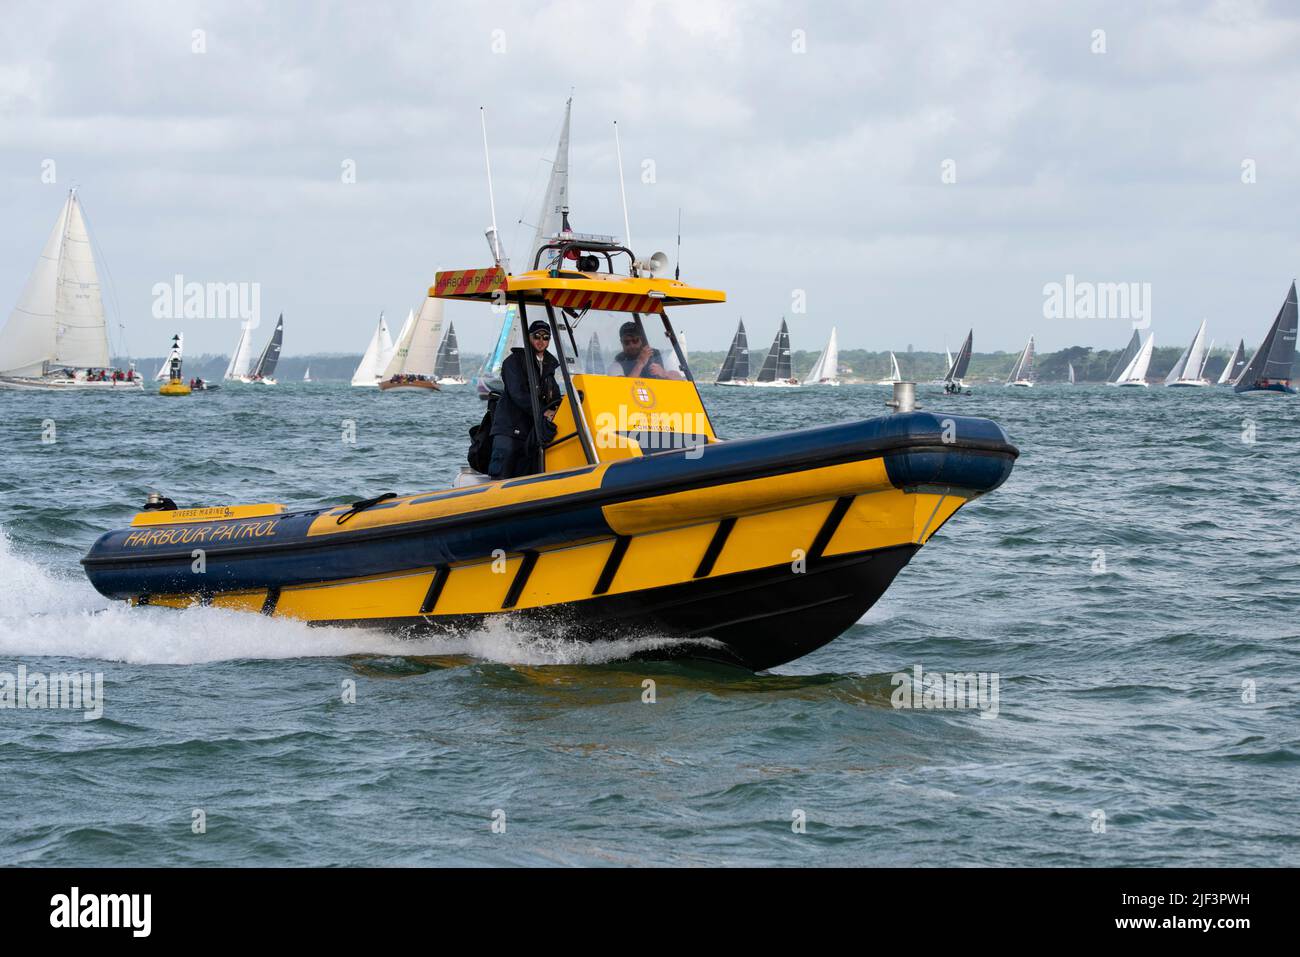 La CÔTE jaune de la patrouille portuaire de la Commission du port de Cowes revient après avoir supervisé le début de la course Round the Island du Club de voile de l'île de Wight Banque D'Images